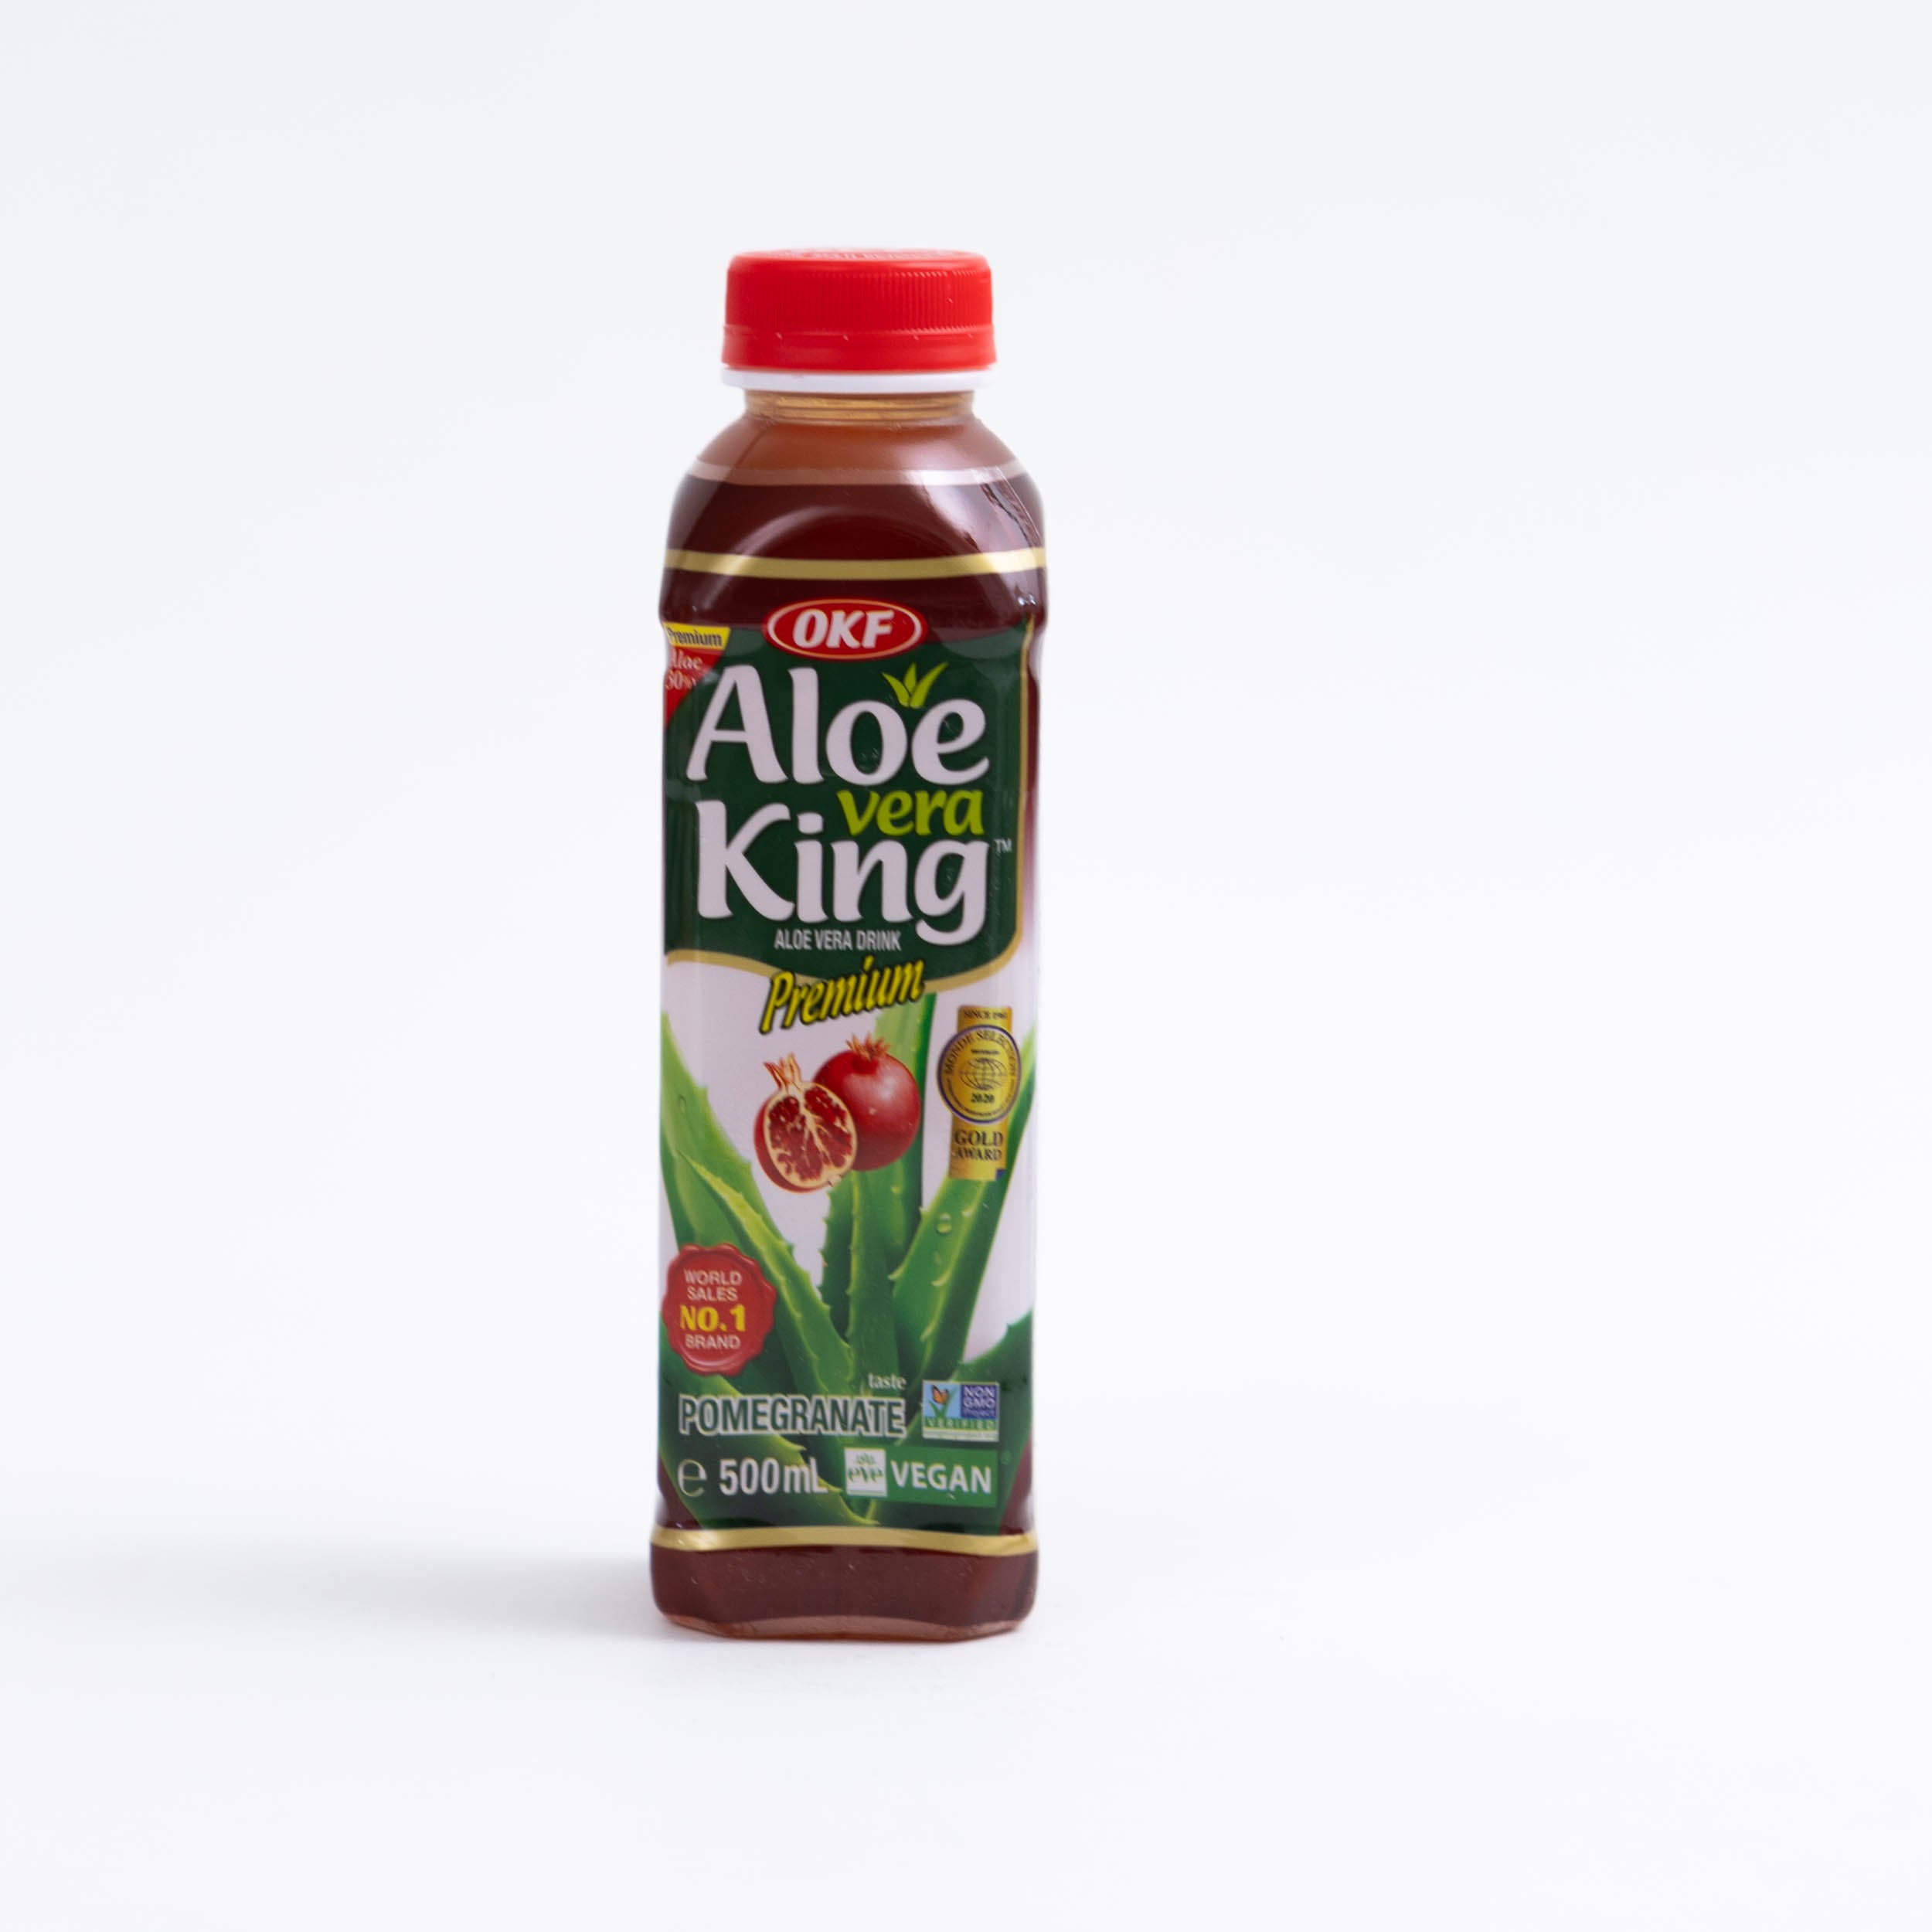 dinese.de aloe vera king asia shop onlineshop online asiatische getränke drink pomegranate granatapfel 